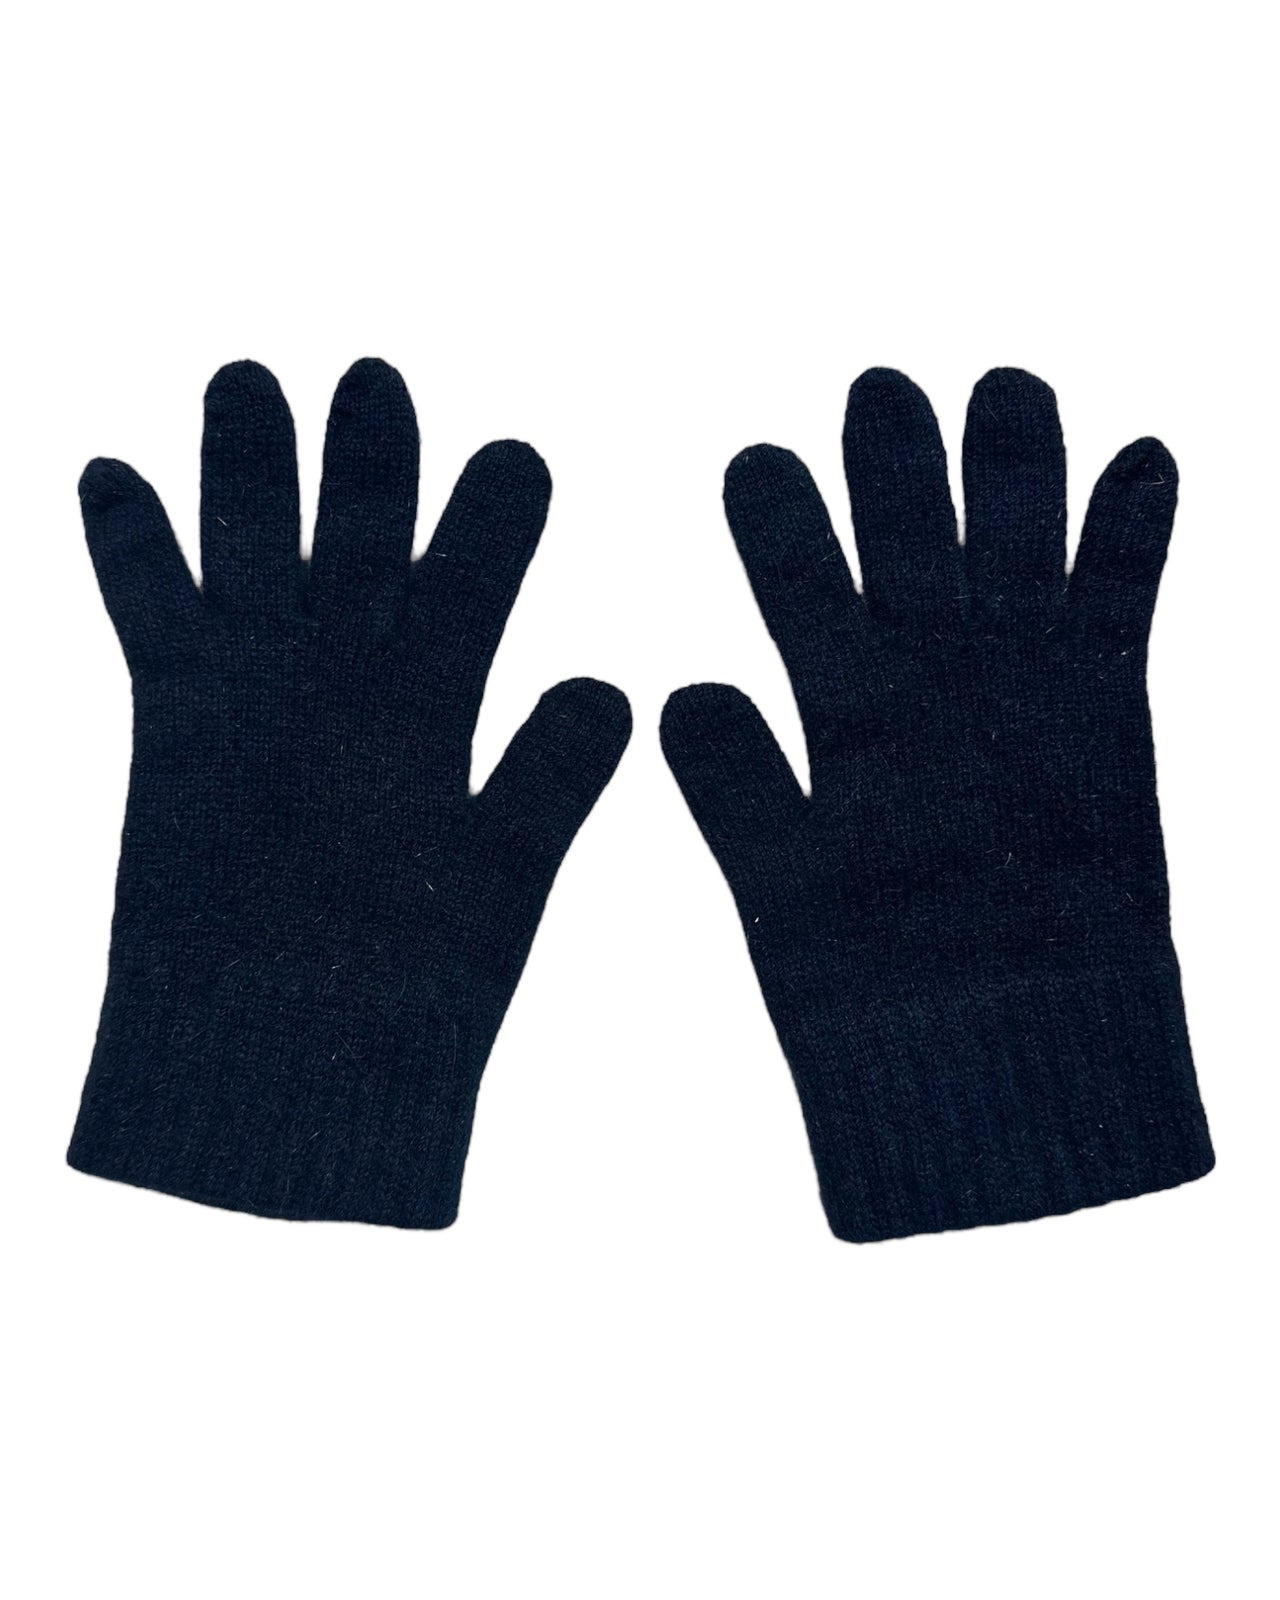 Navy Blue Possum Merino and Silk Full Finger Gloves